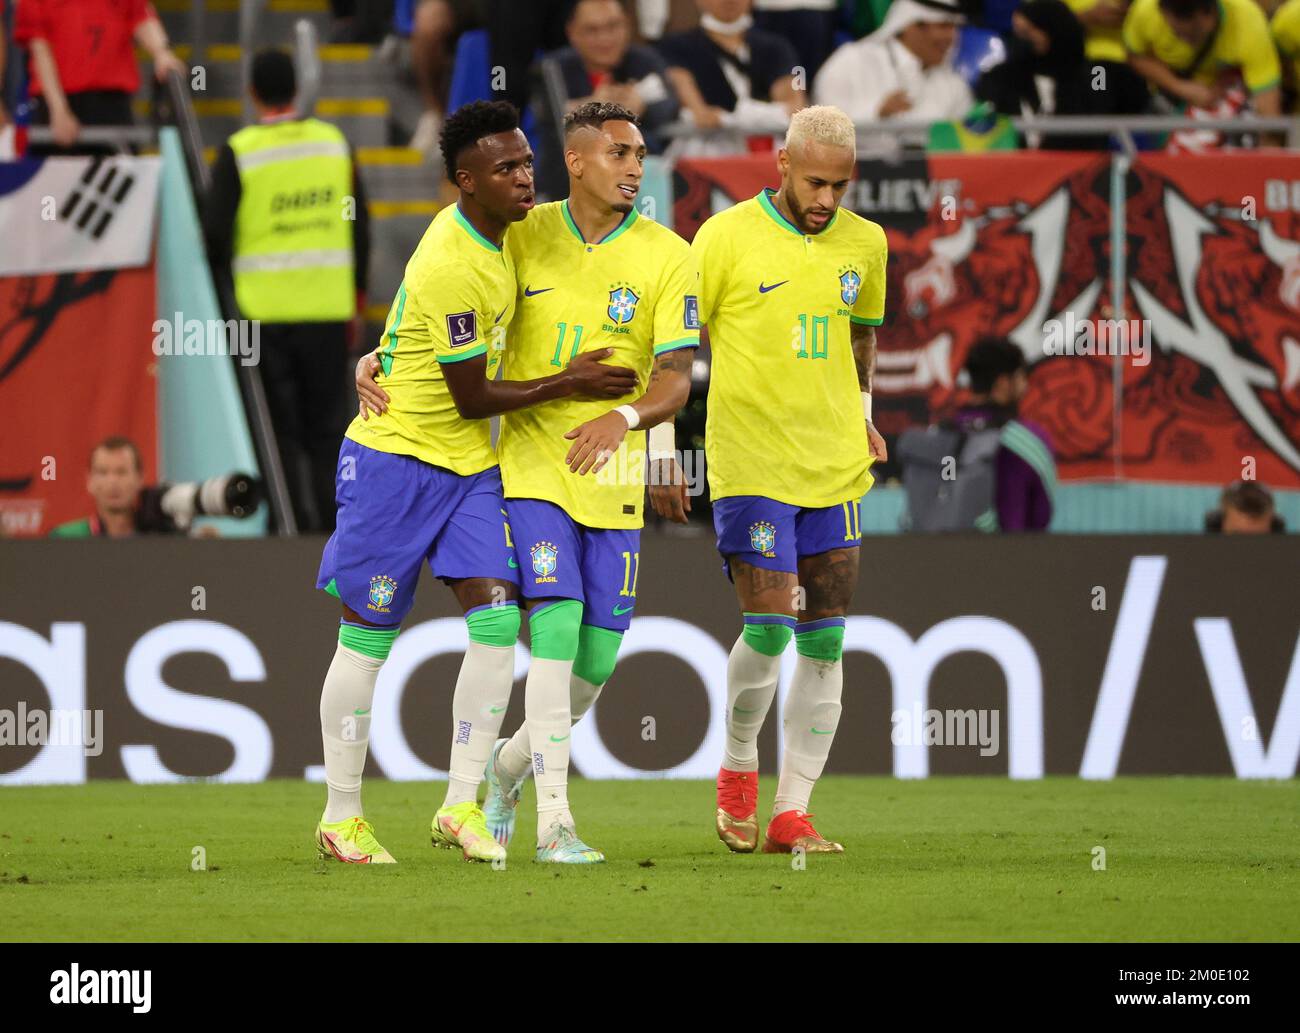 Rodrygo Silva de Goes du Brésil célèbre son but avec Raphinha, Neymar Jr lors de la coupe du monde de la FIFA 2022, Round of 16 match de football entre le Brésil et la République de Corée sur 5 décembre 2022 au stade 974 à Doha, Qatar - photo Jean Catuffe / DPPI Banque D'Images